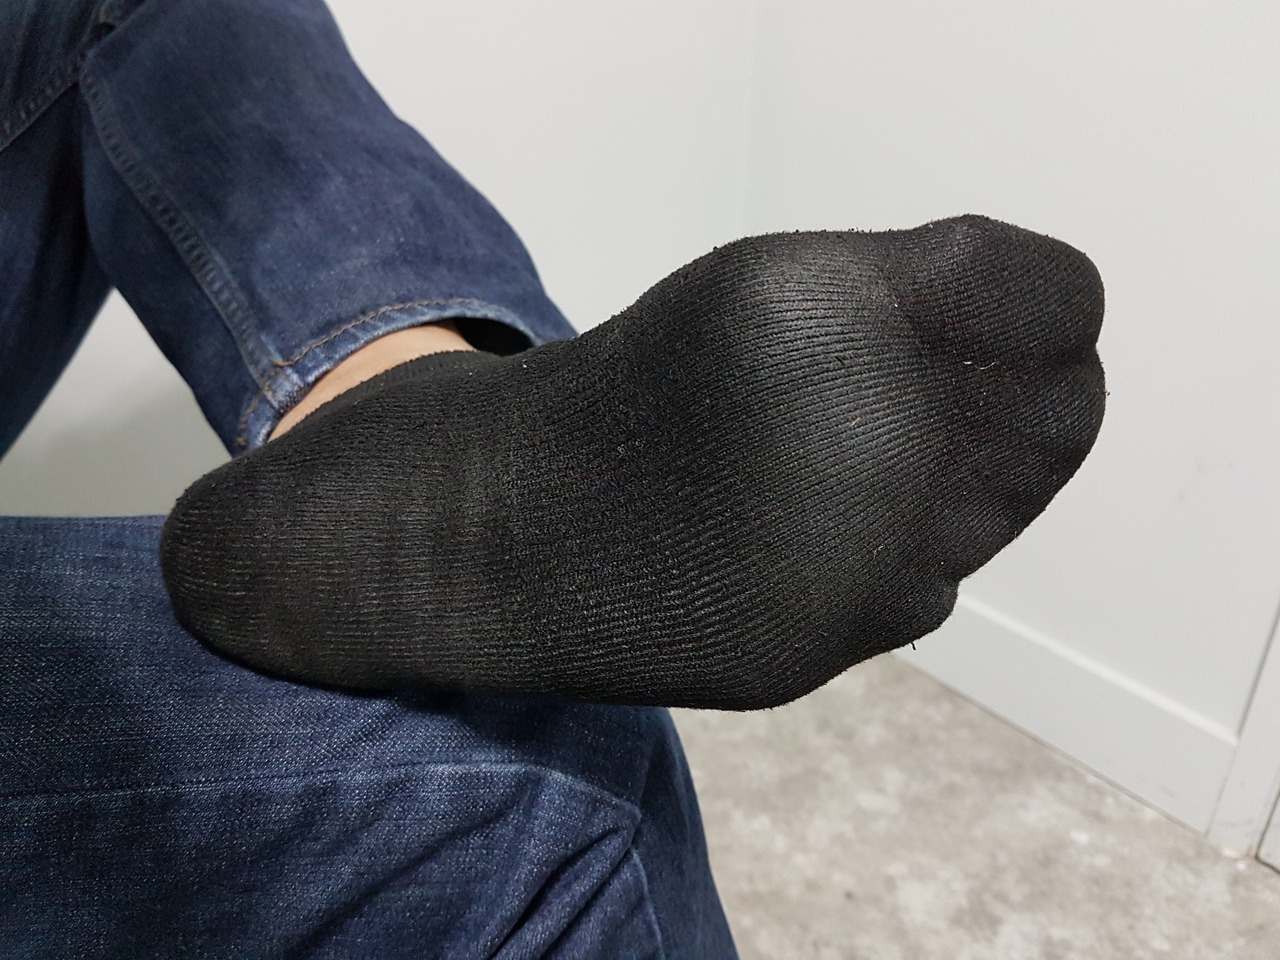 ankle socks on Tumblr